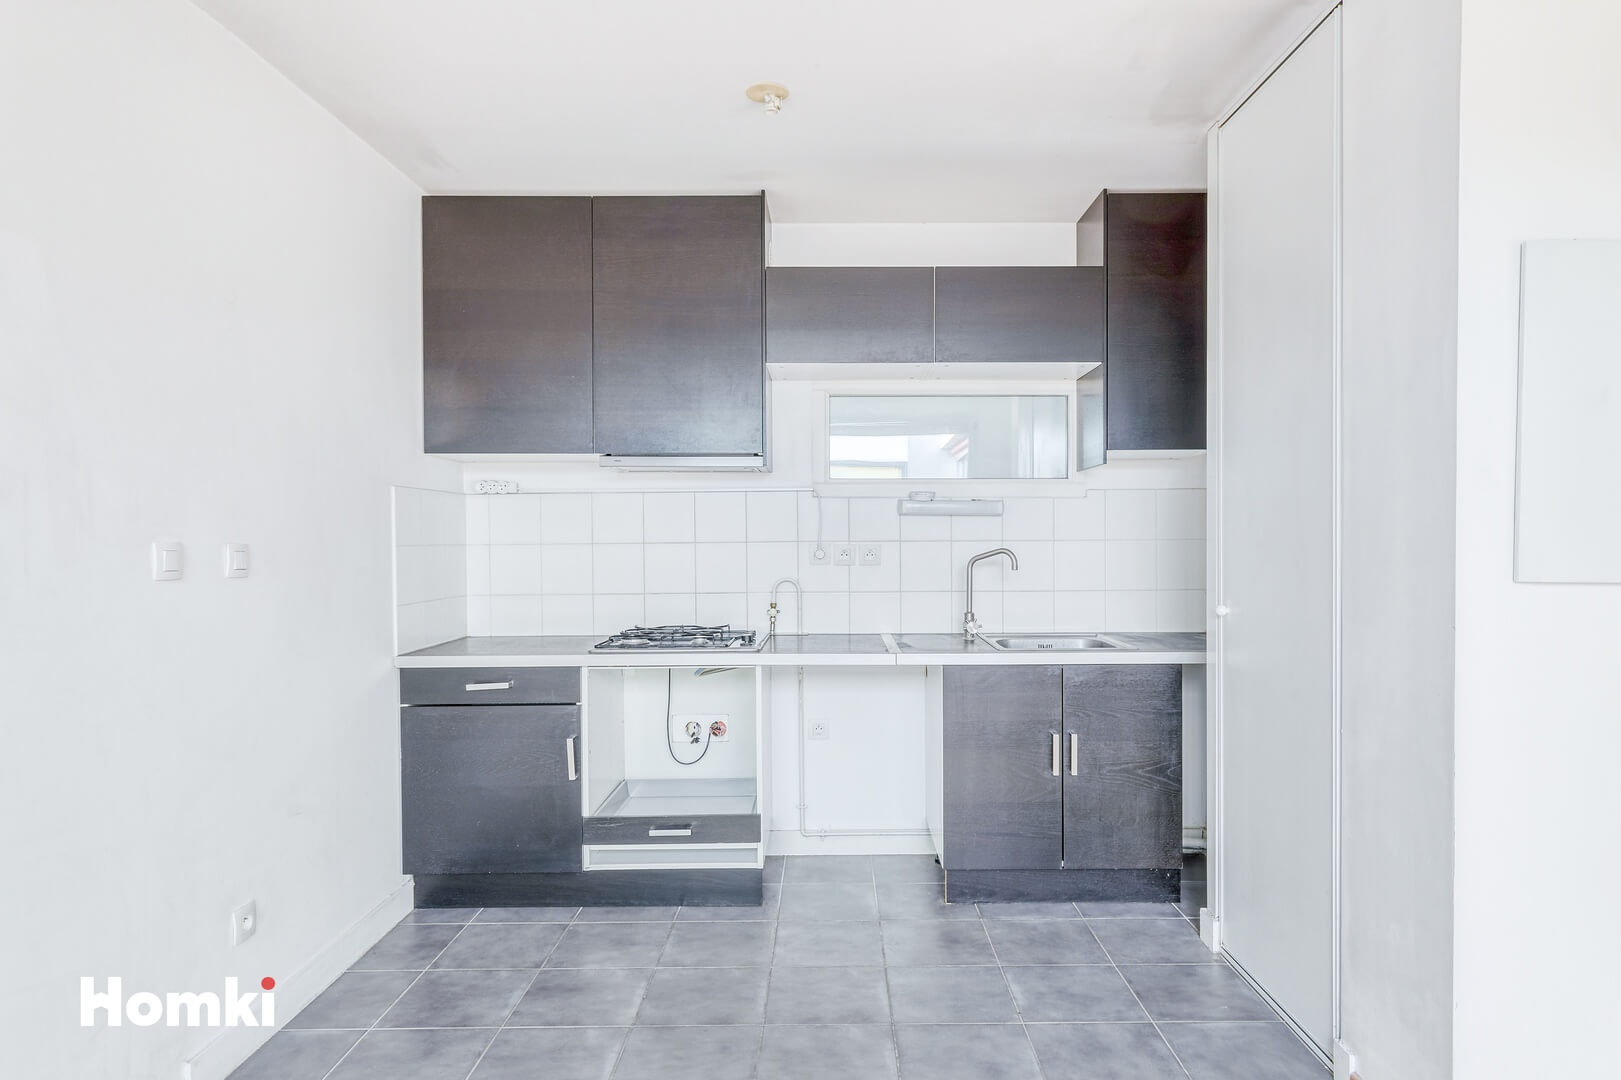 Homki - Vente Appartement  de 100.0 m² à Bordeaux 33300